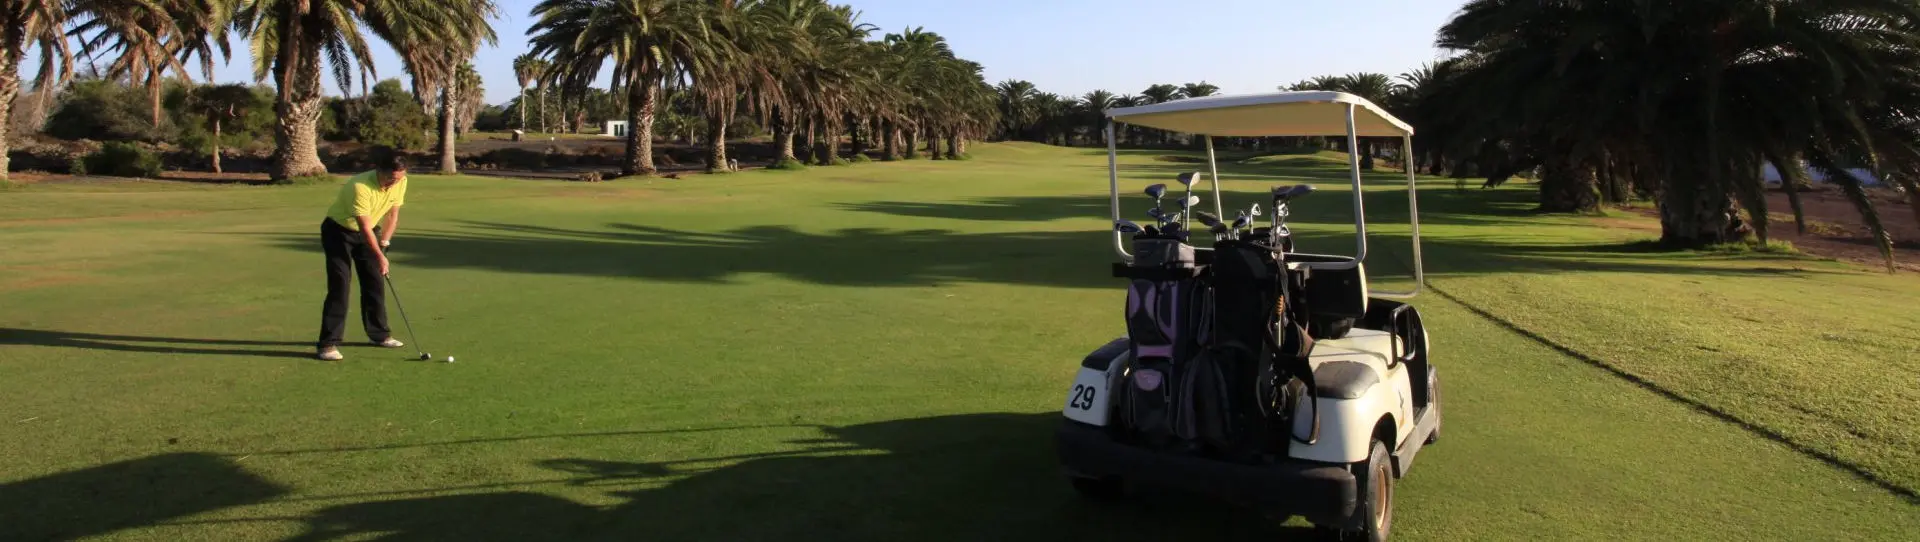 Spain golf courses - Lanzarote Golf Course - Photo 3